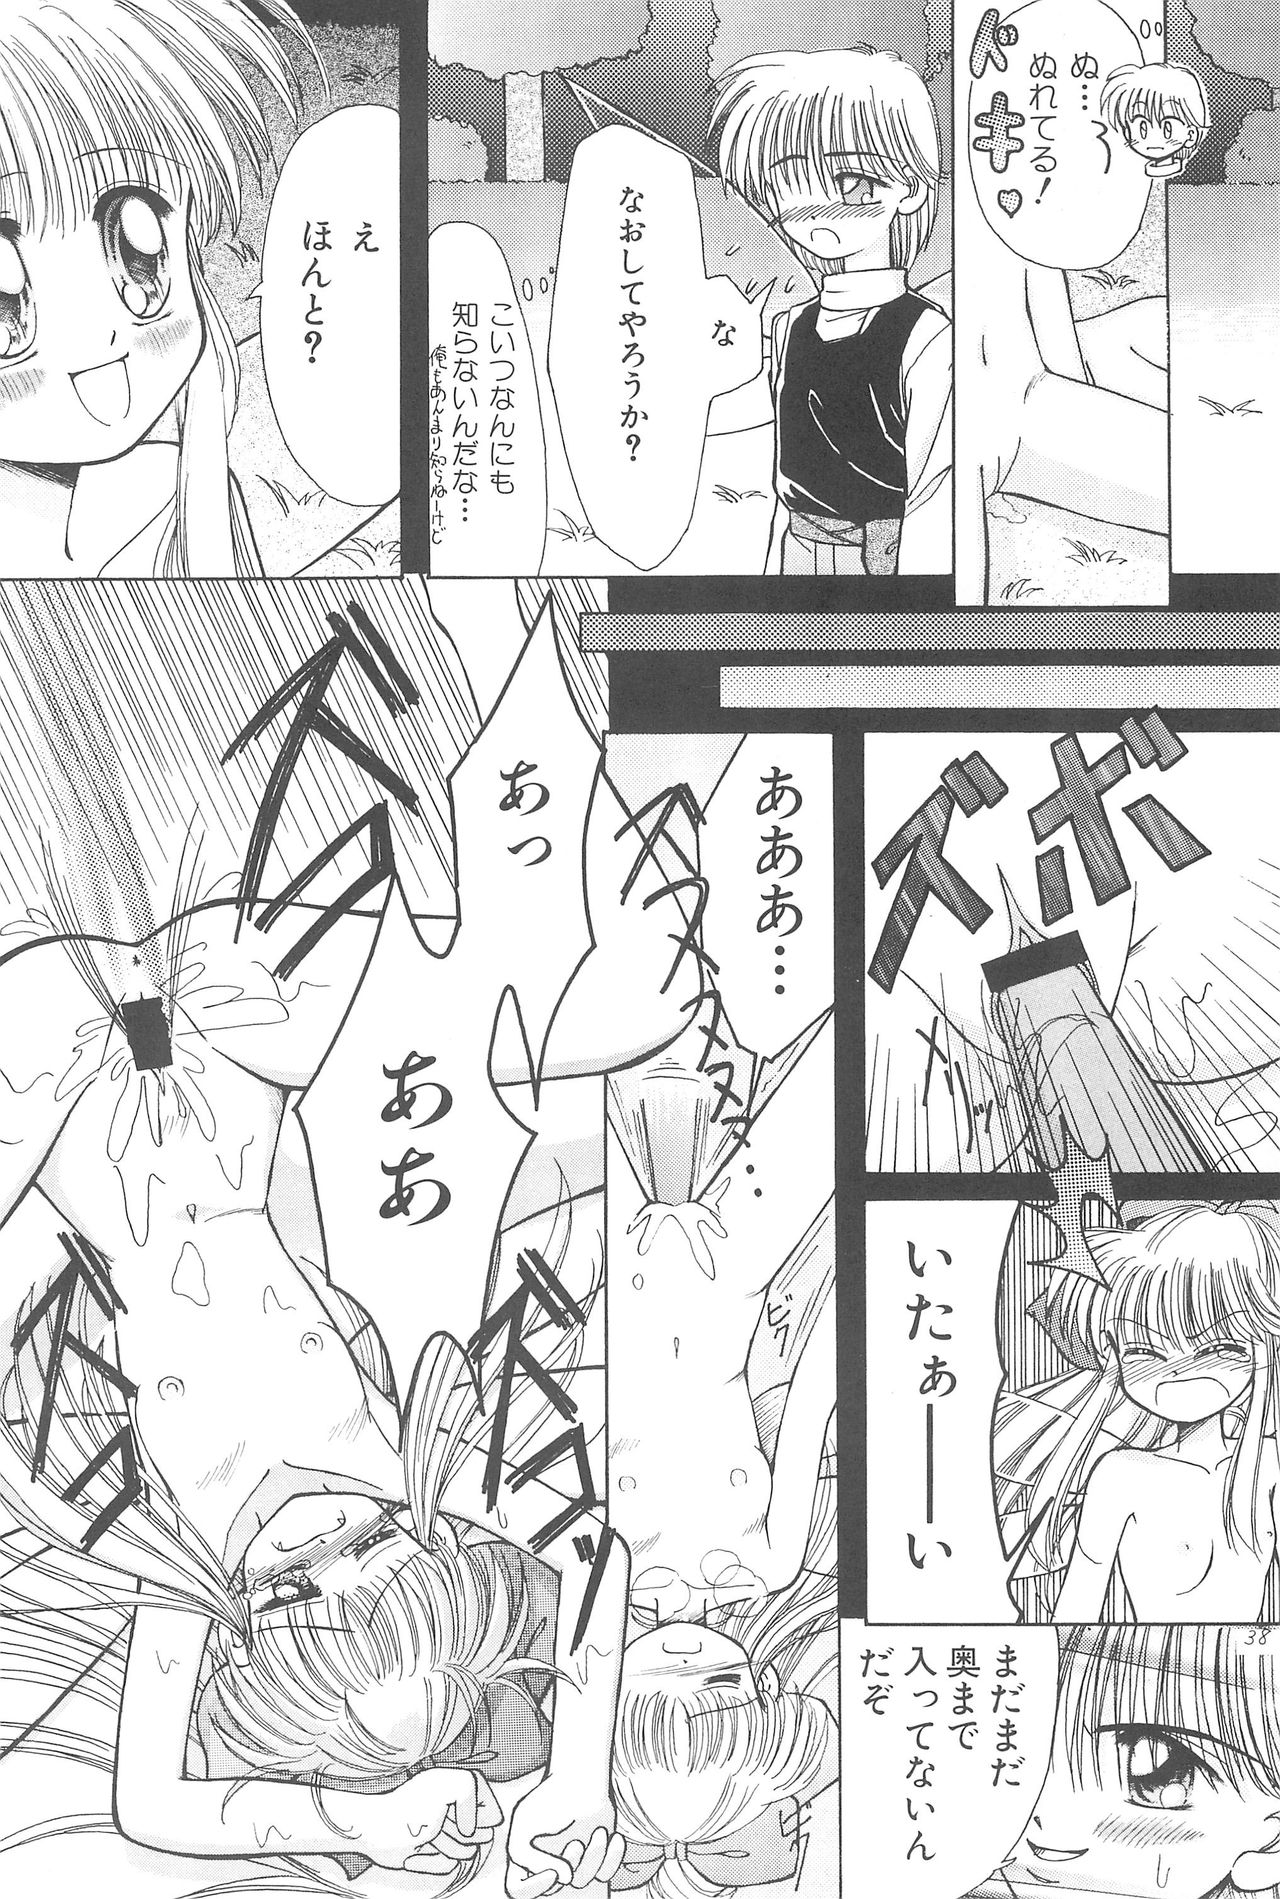 (CR23) [PHOENIX PROJECT (Kamikaze Makoto)] Okosama Lunch Original 1 page 40 full